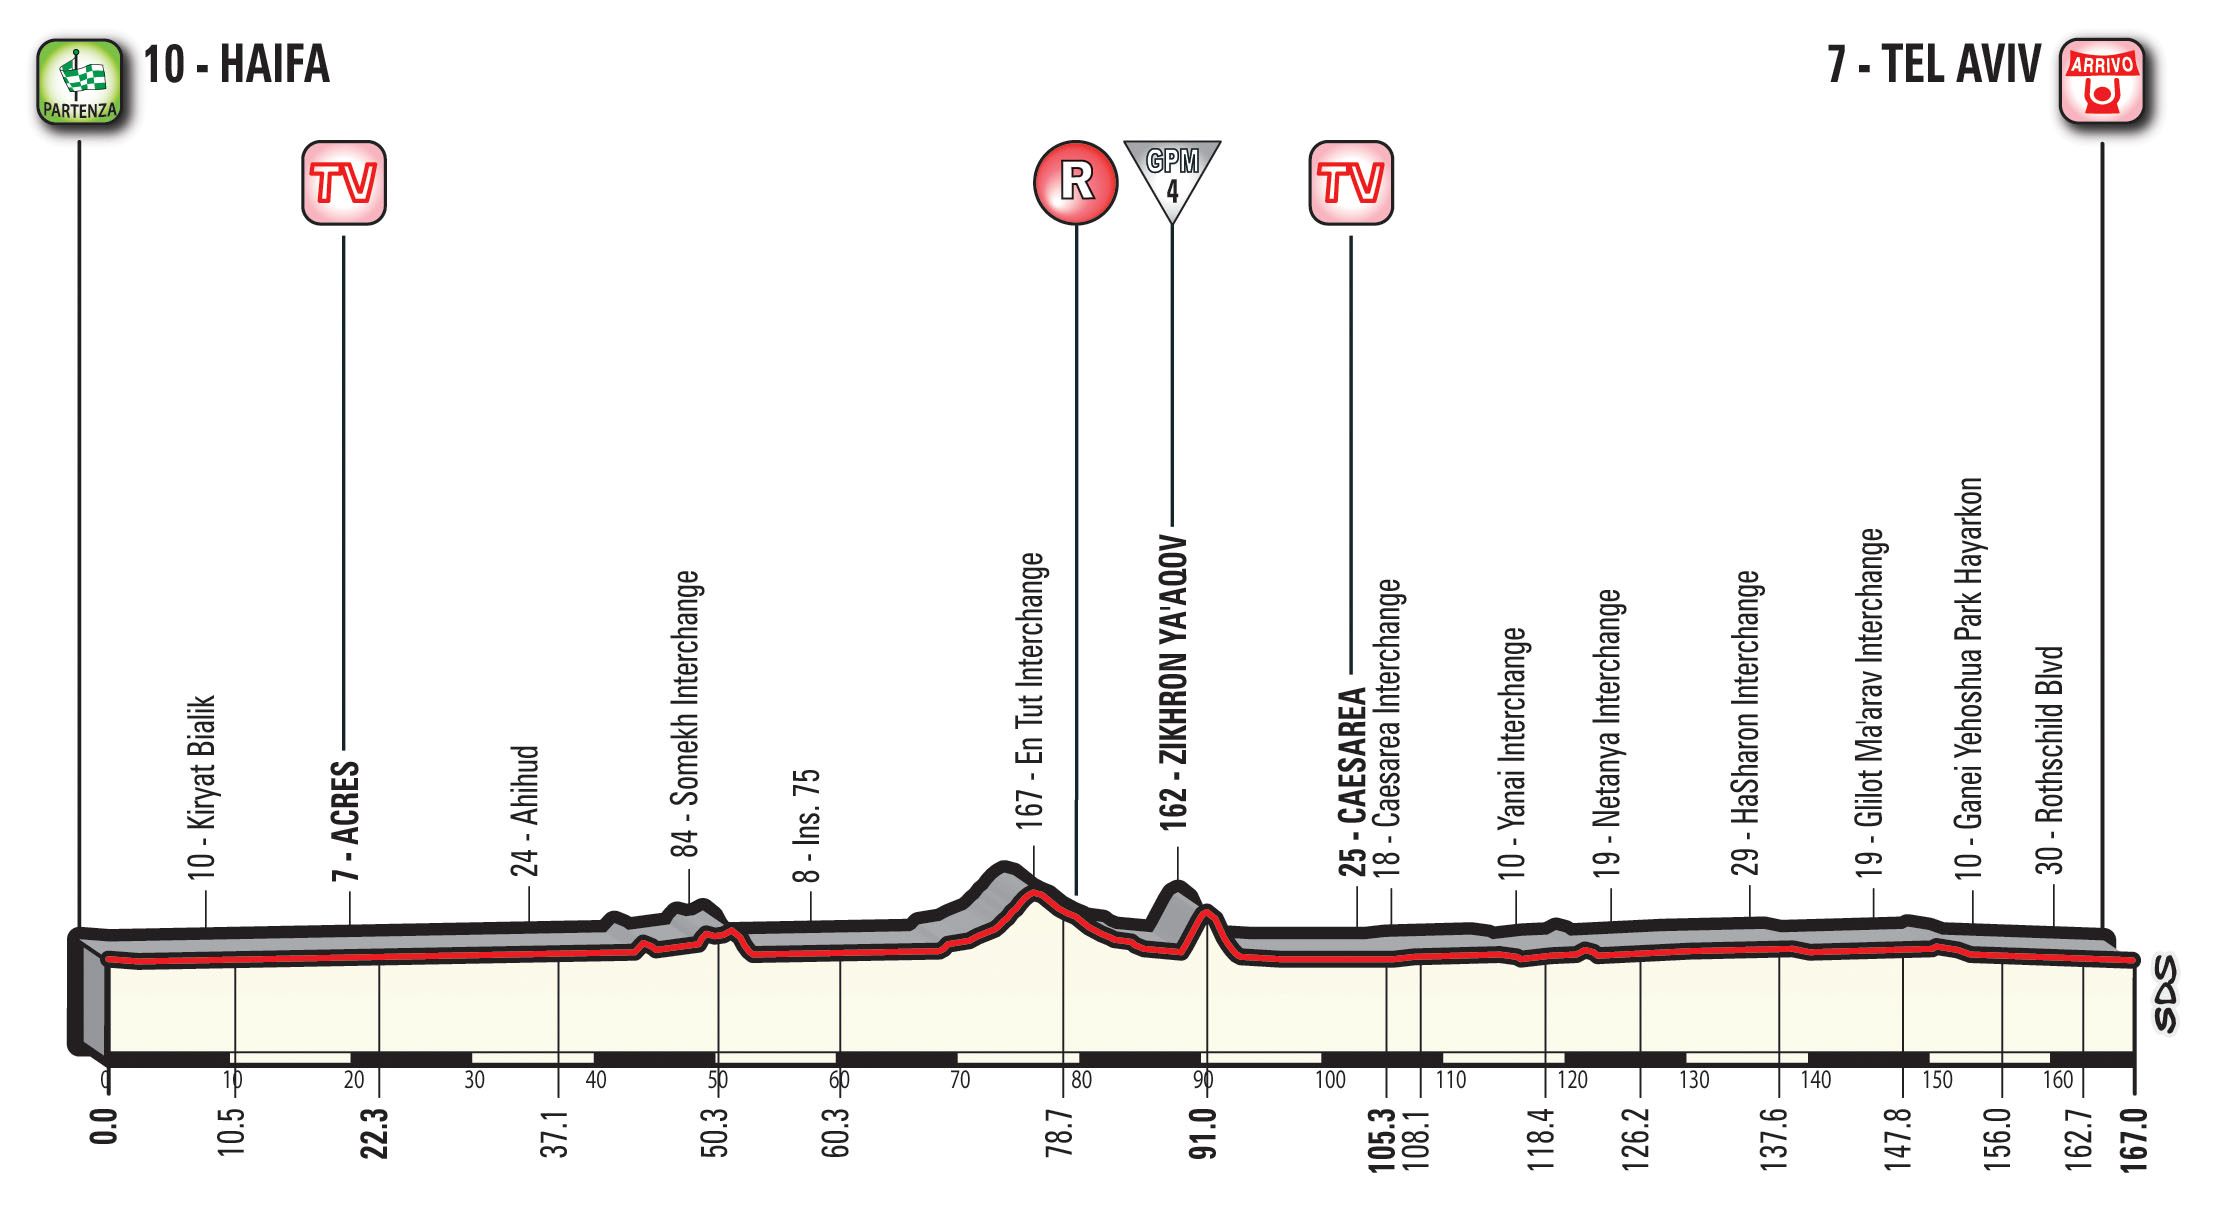 profil 2. etapu Giro d'Italia 2018